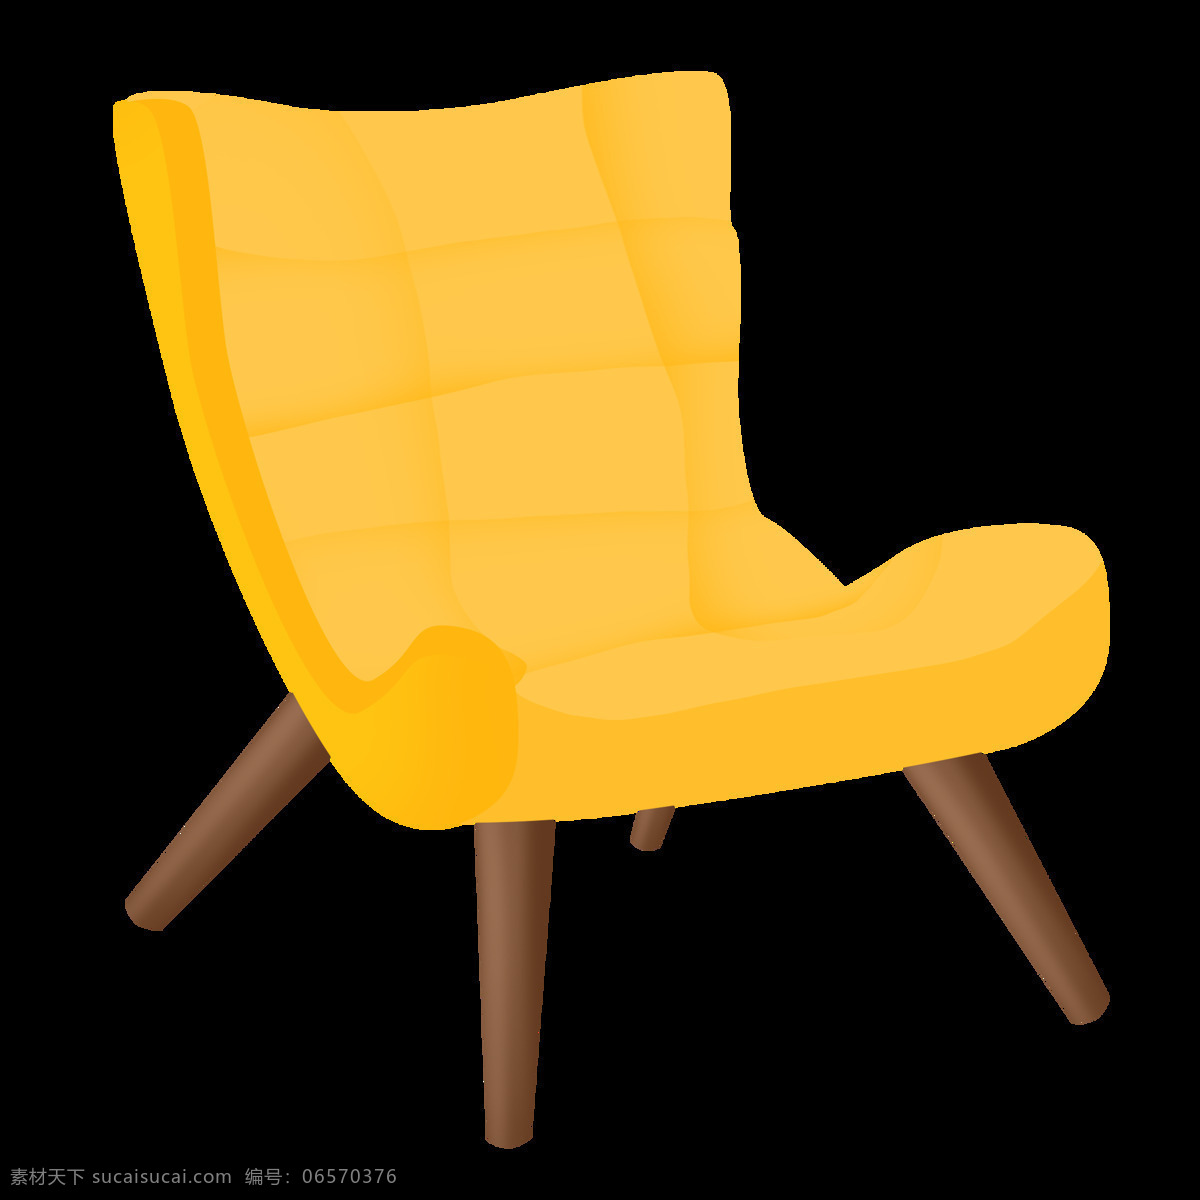 黄色 椅子 装饰 插画 黄色的椅子 漂亮的椅子 家具椅子 创意椅子 立体椅子 精美椅子 卡通椅子